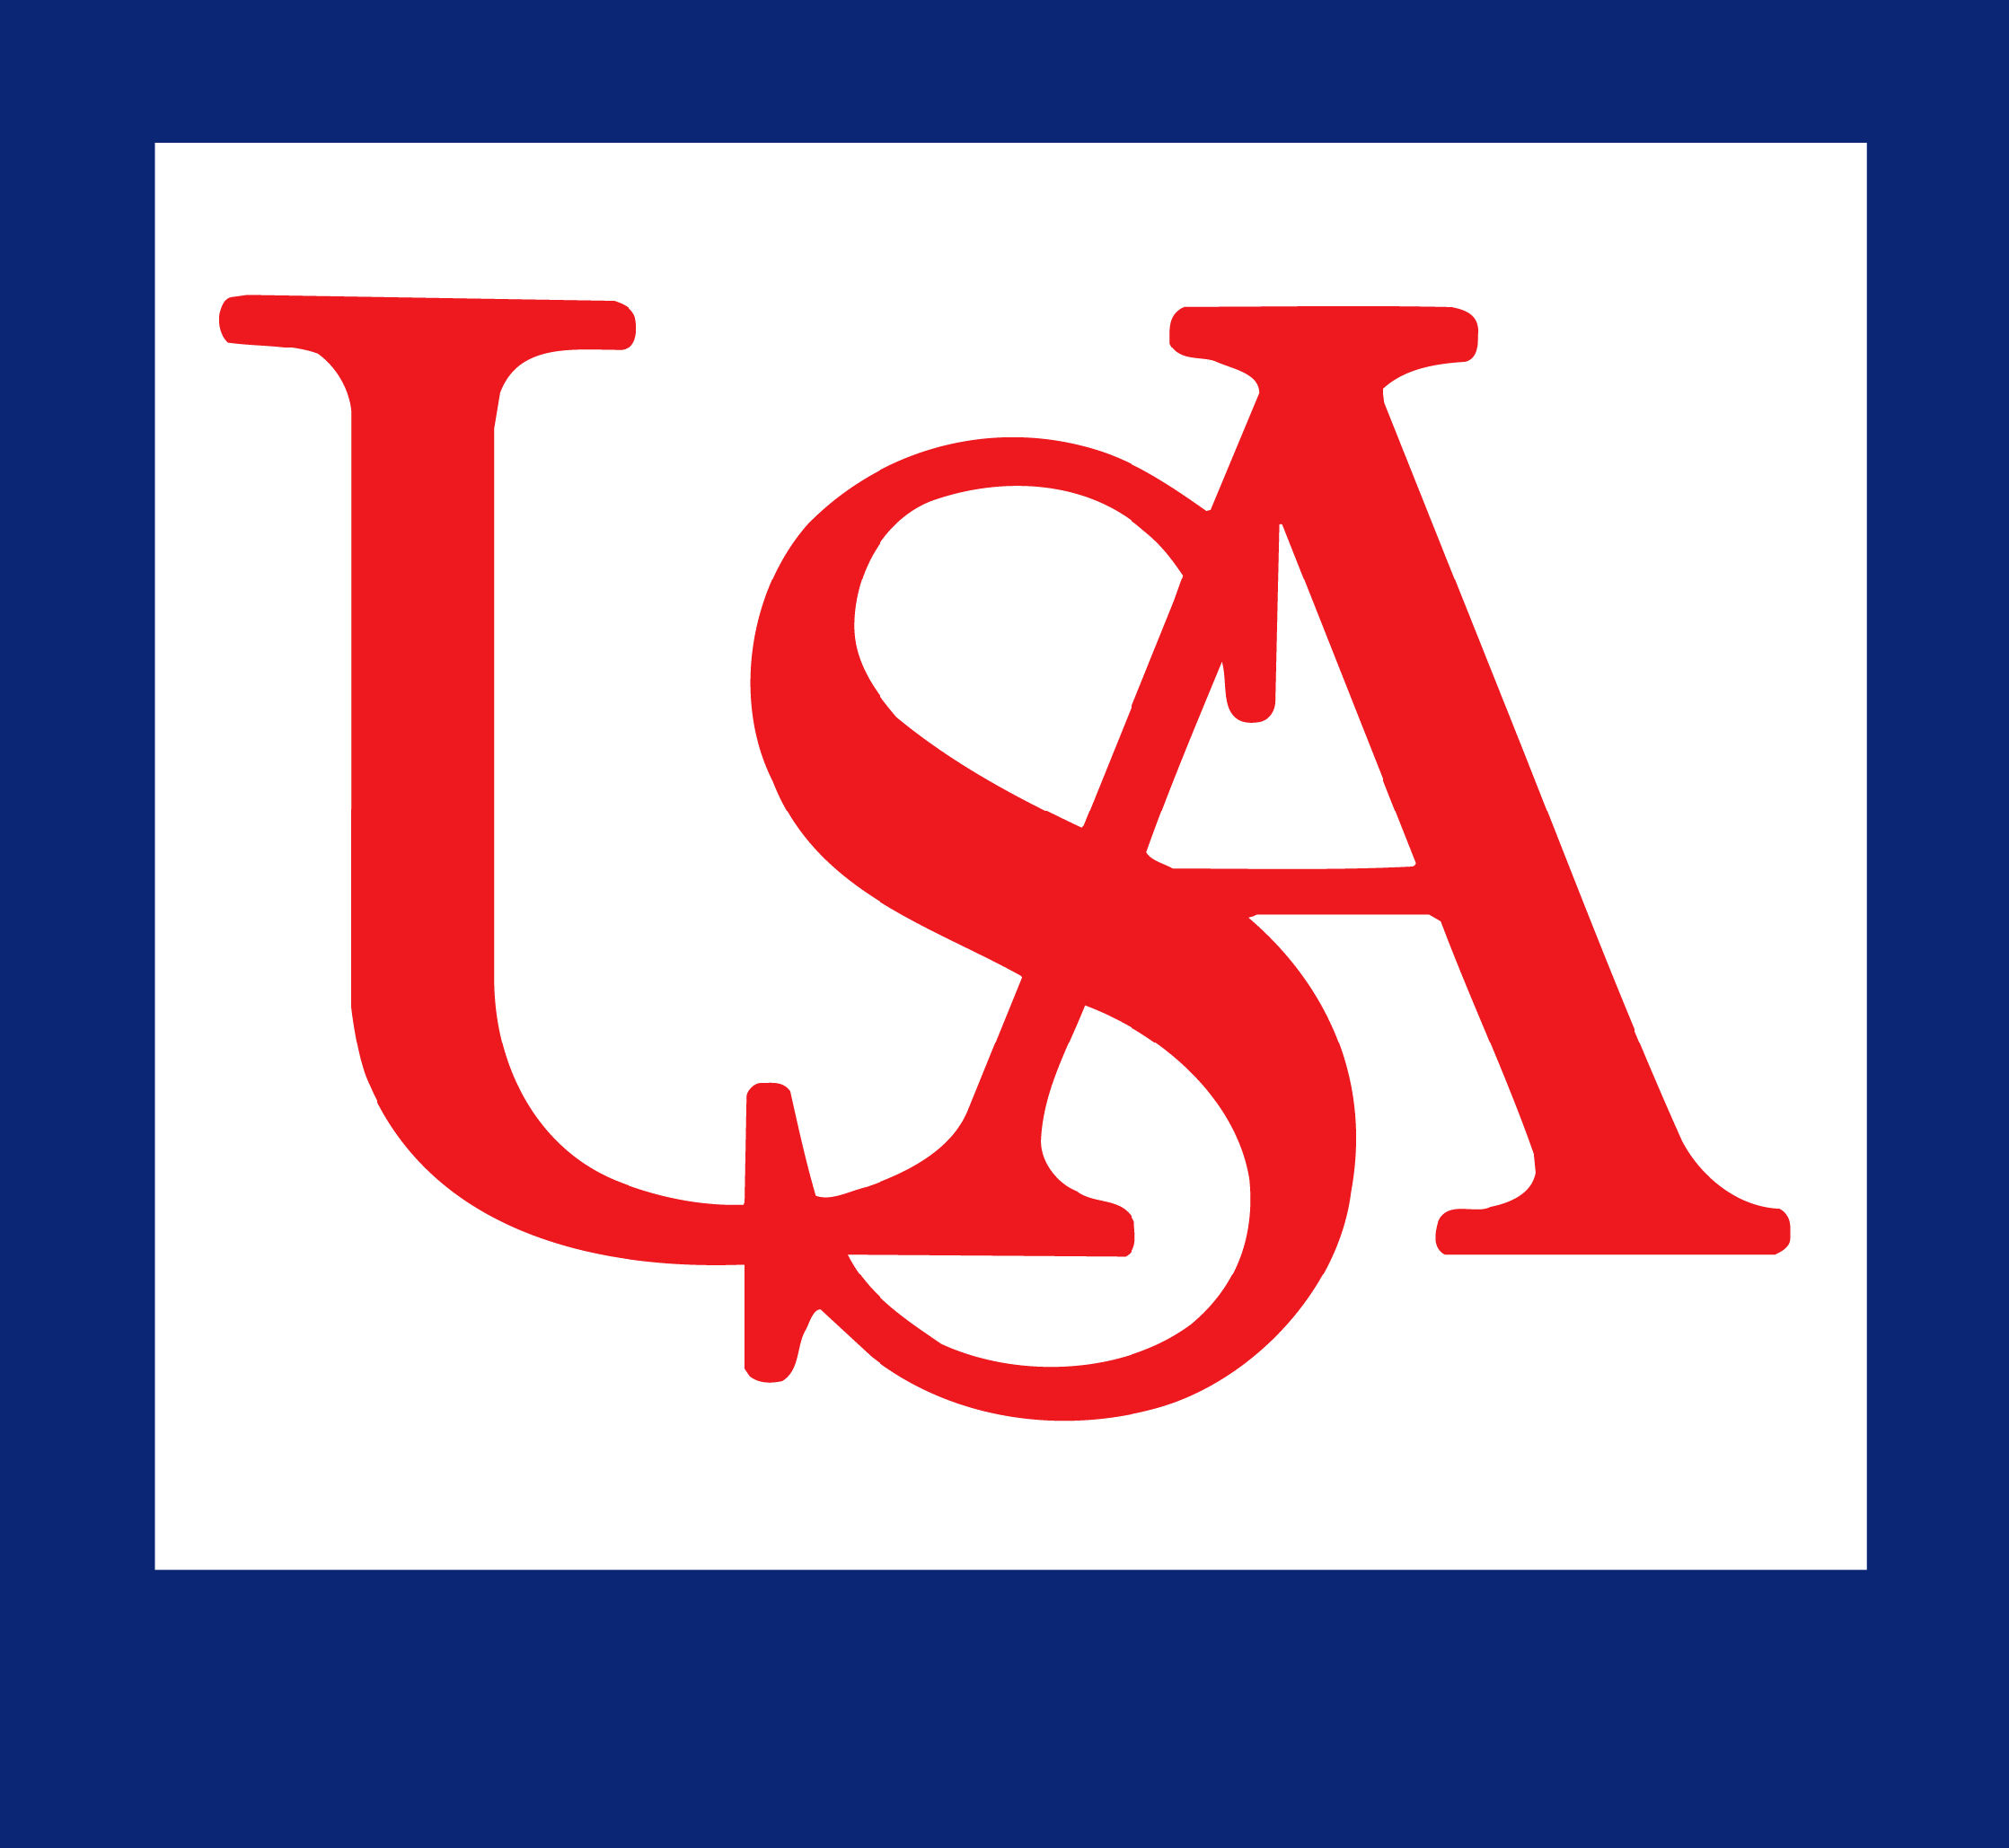 university of alabama logo